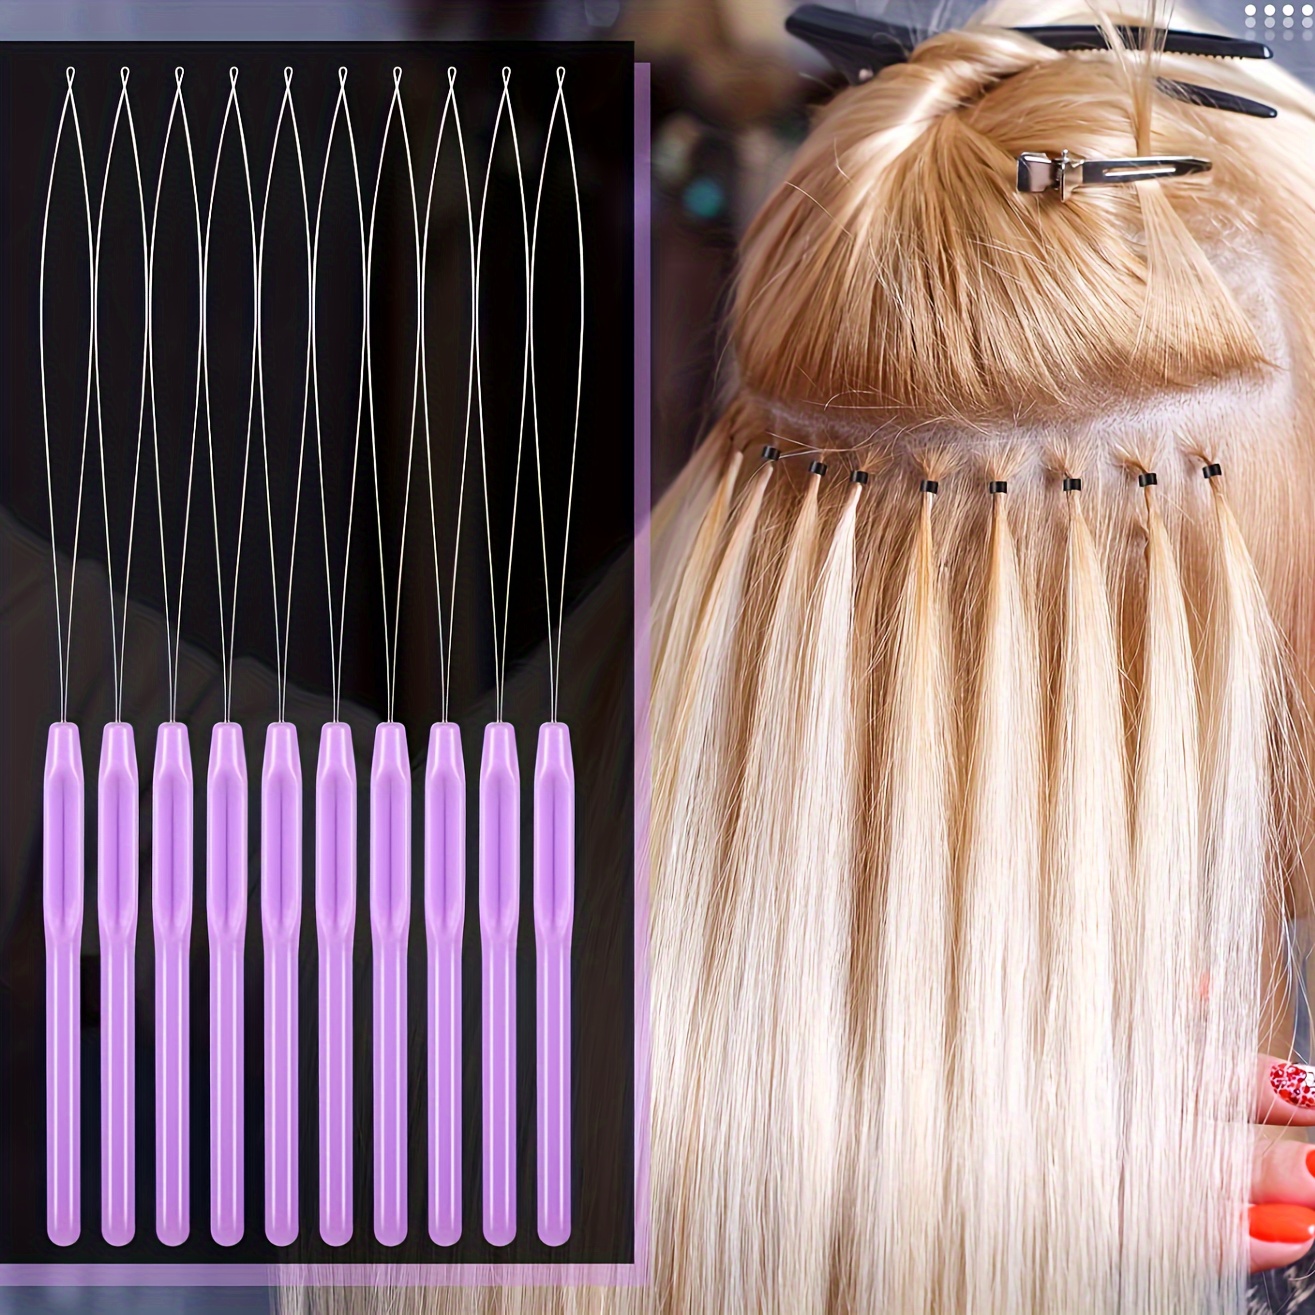 2pcs Fashion Hair Knitting Artifact Hair Pulling Tool